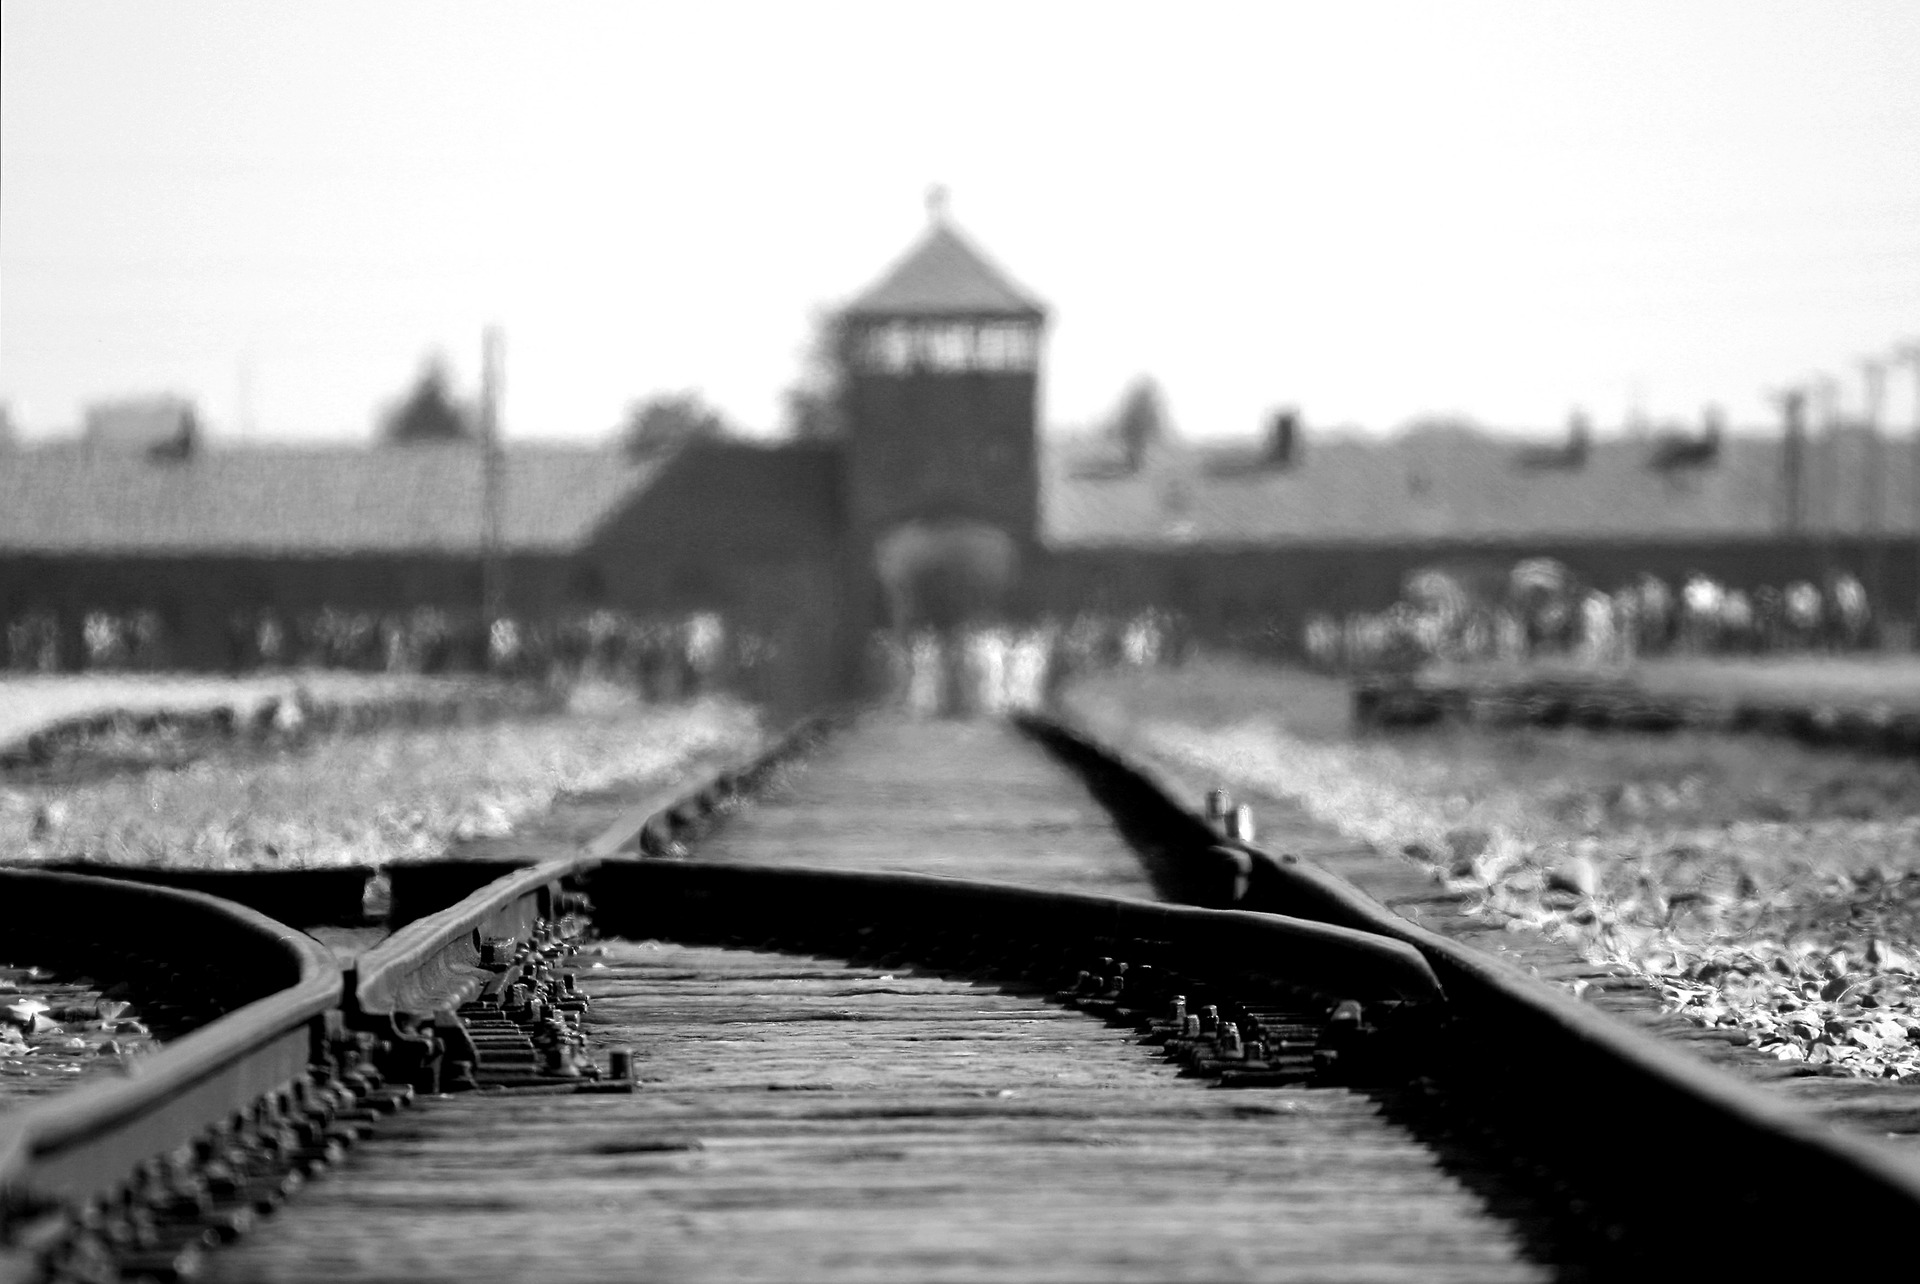 Bis heute soll das Mahnmal in Berlin an die Millionen Menschen erinnern die dem Holocaust der Nazis zum Opfer fielen. Bildquelle: pixabay.de